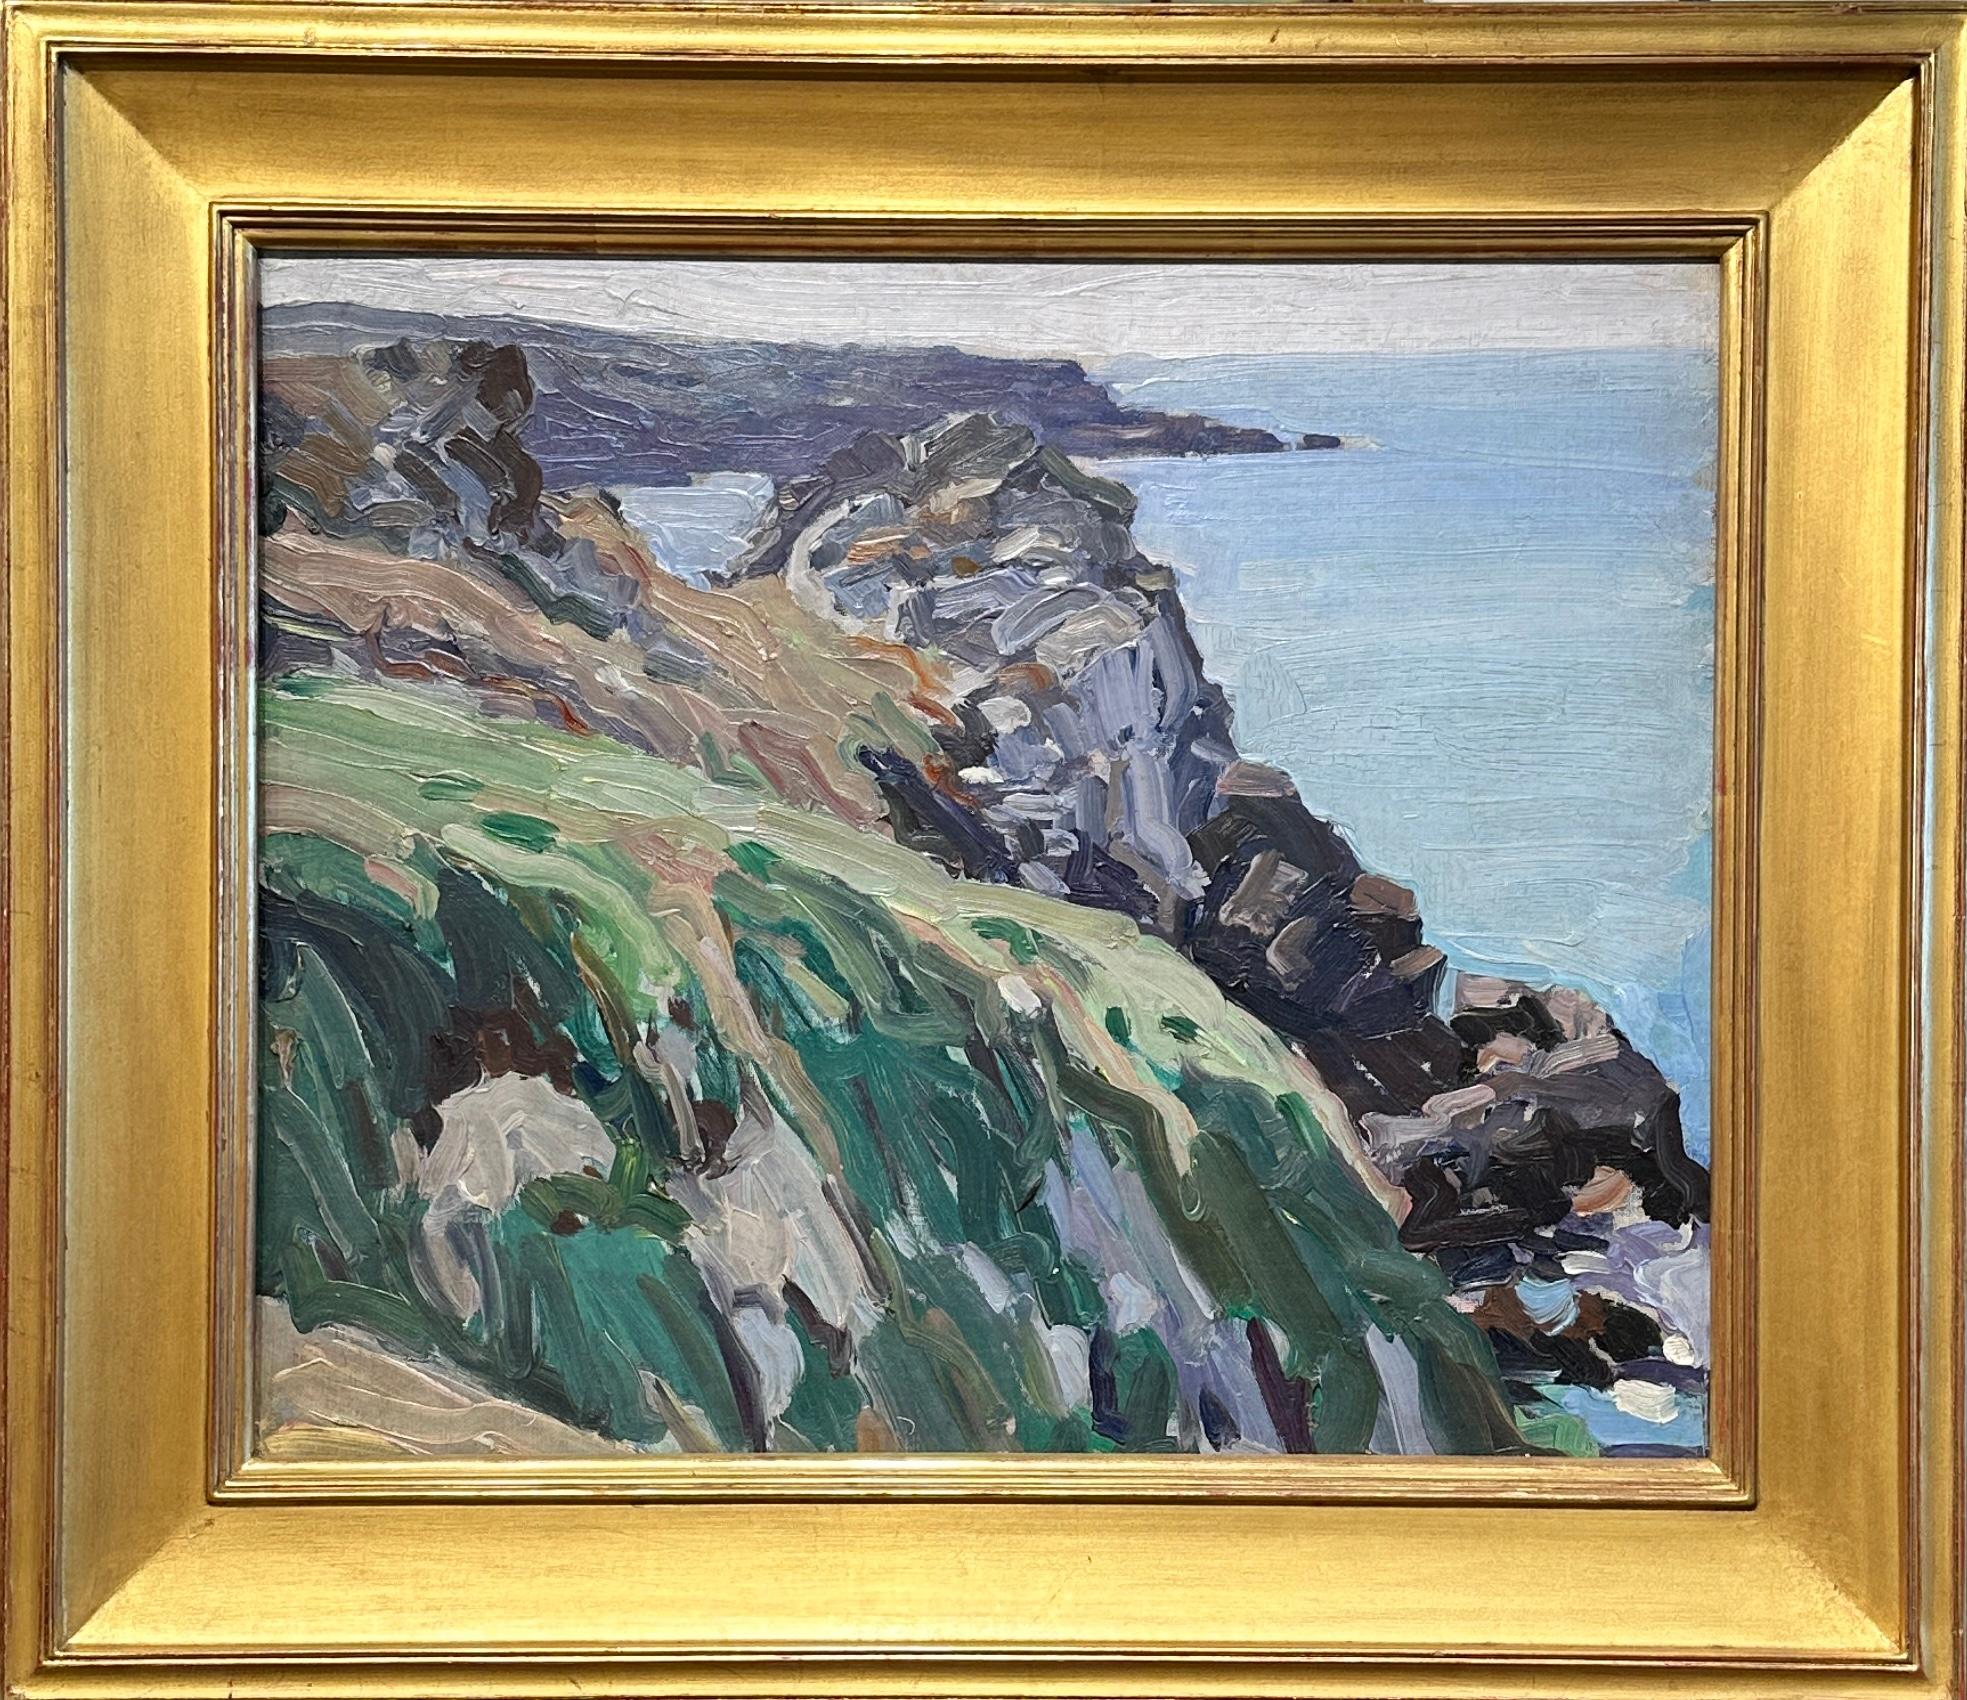 Brittany Coast (dans le livre d'Oberteuffer à la page 45), paysage, paysage côtier - Painting de George Obertouffer